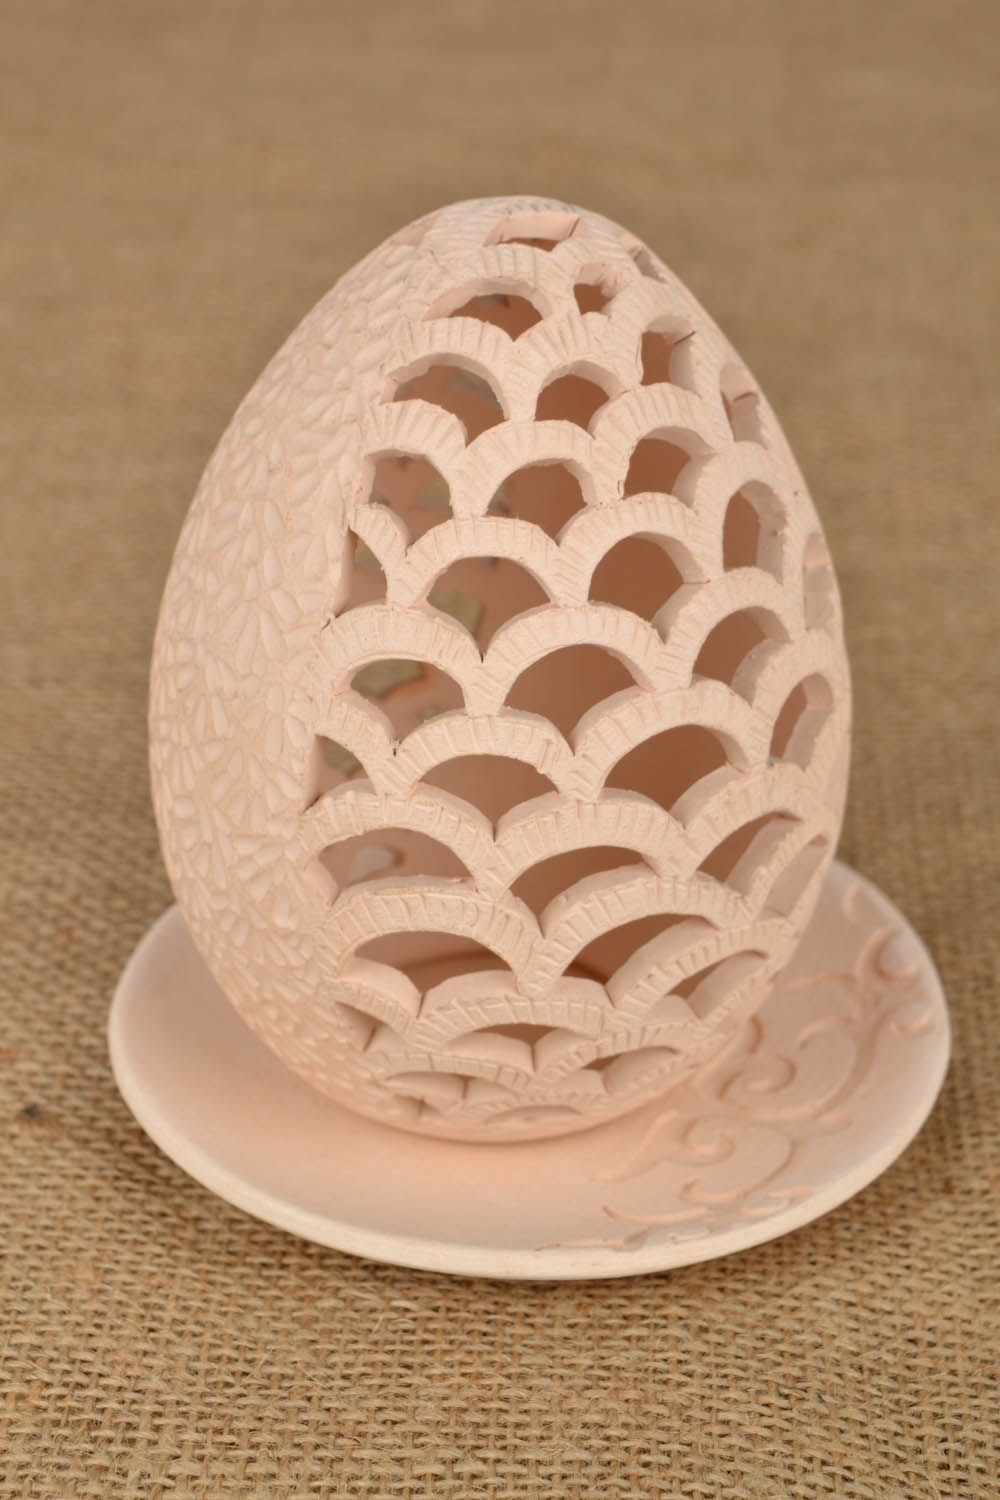 Керамический подсвечник Ажурное яйцо фото 1